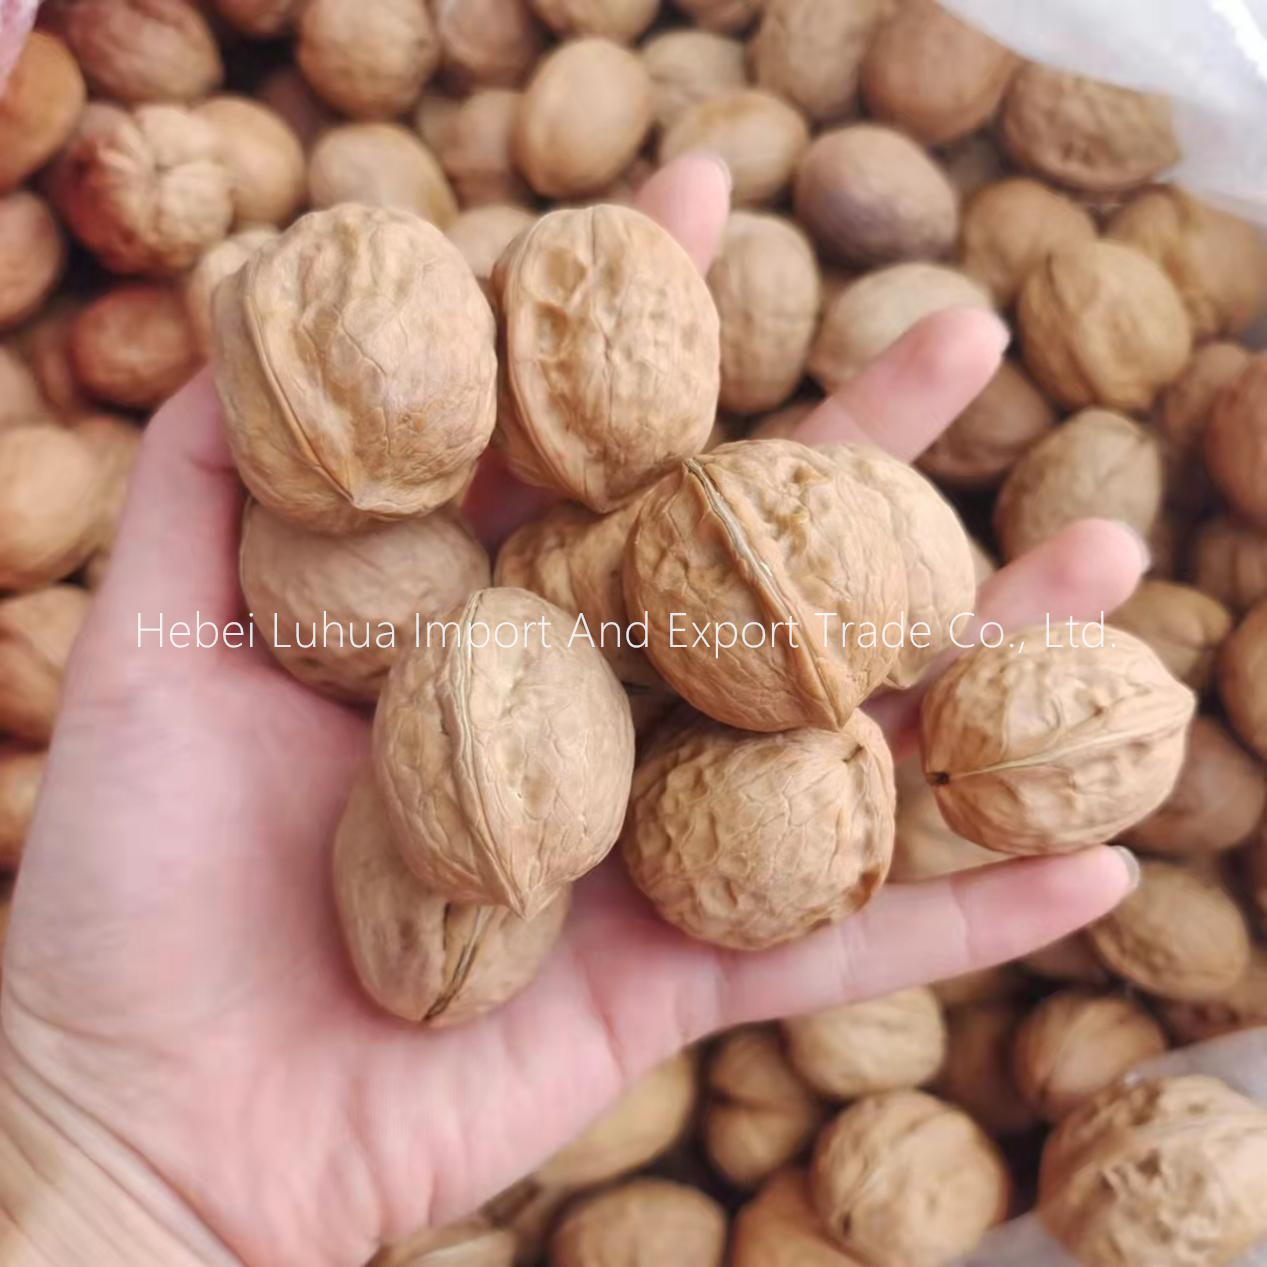 Xinjiang walnut xinfeng kalite nwaye nan koki